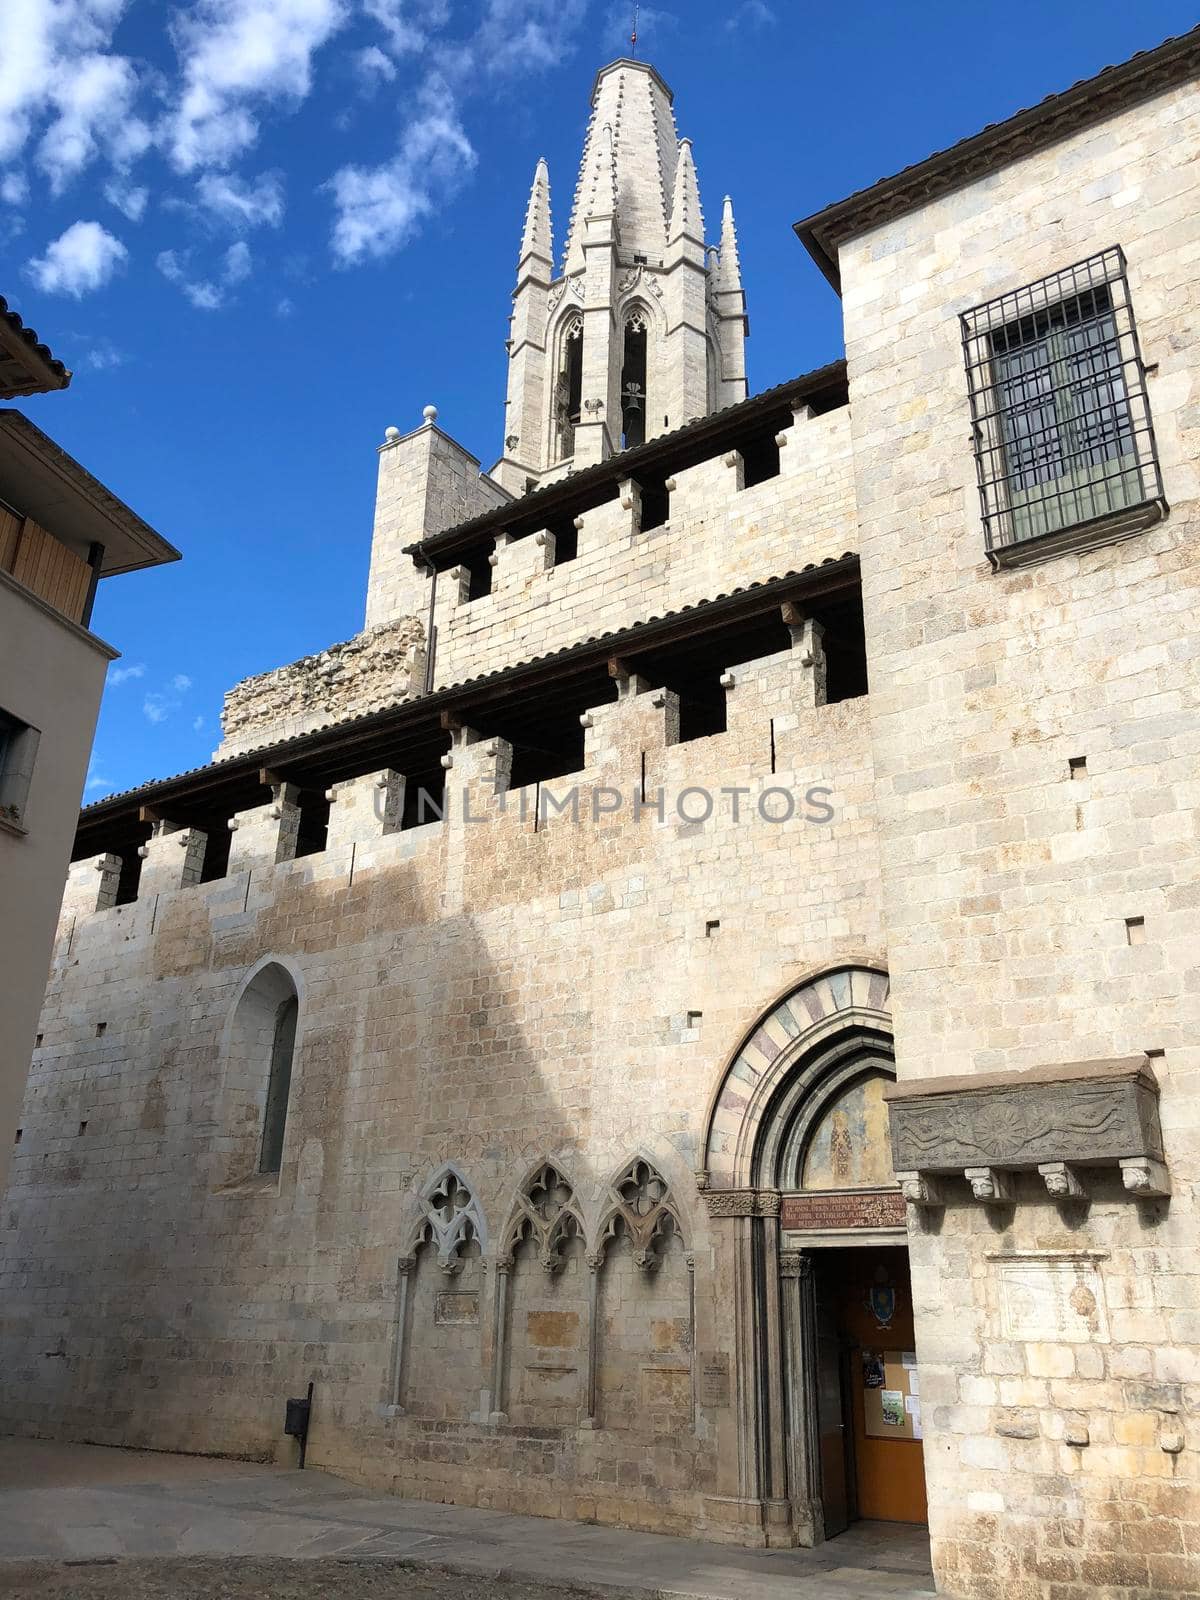 Basilica de Sant Feliu in Girona Spain